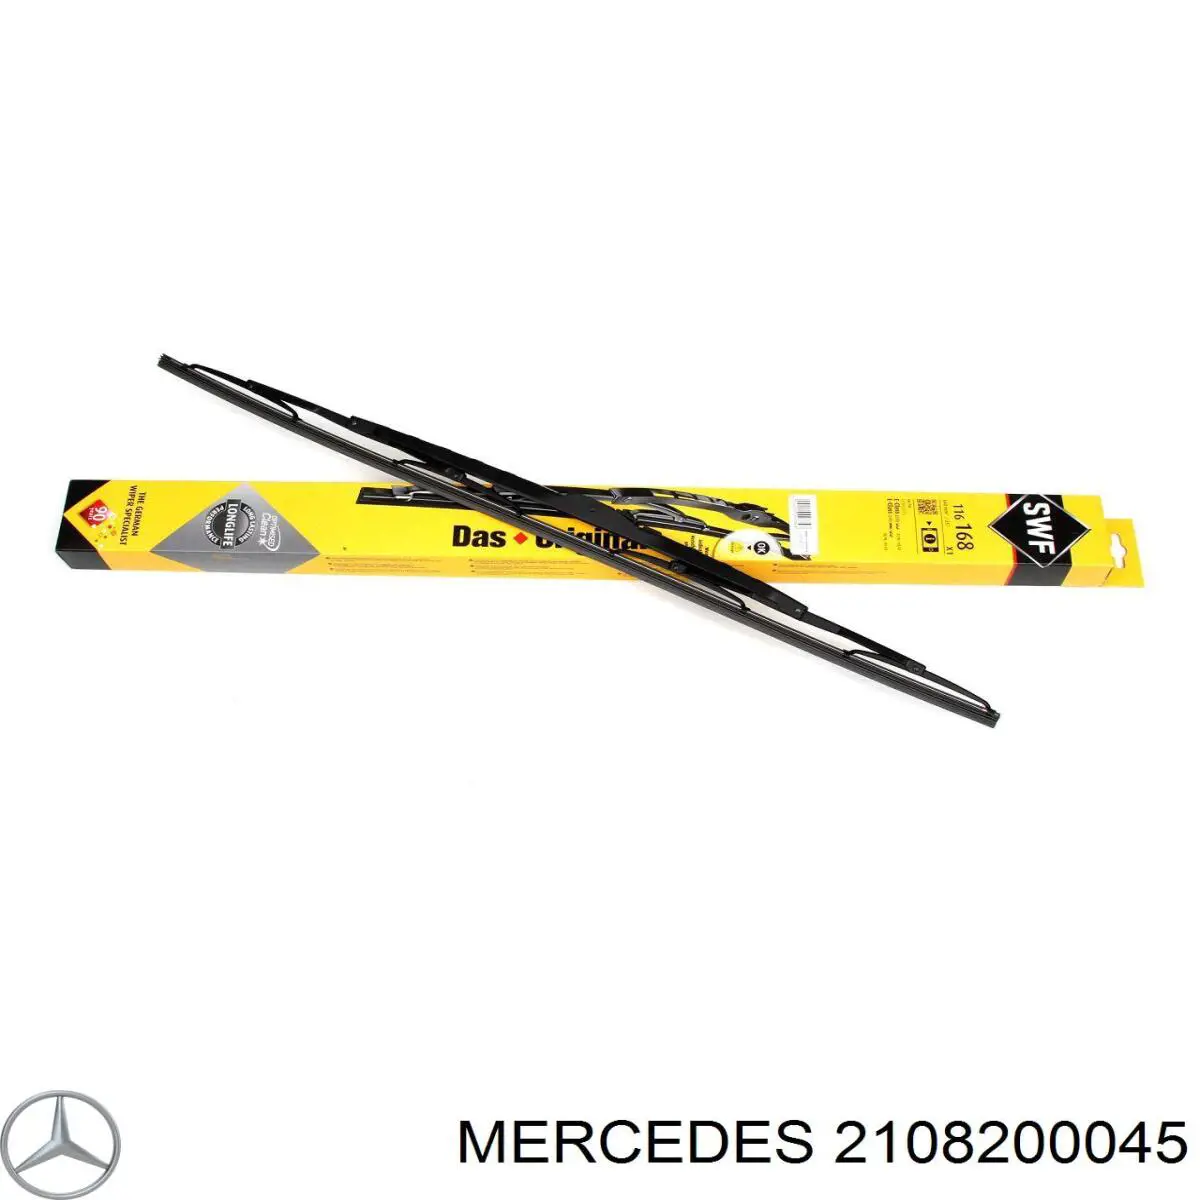 2108200045 Mercedes щетка-дворник лобового стекла, комплект из 2 шт.